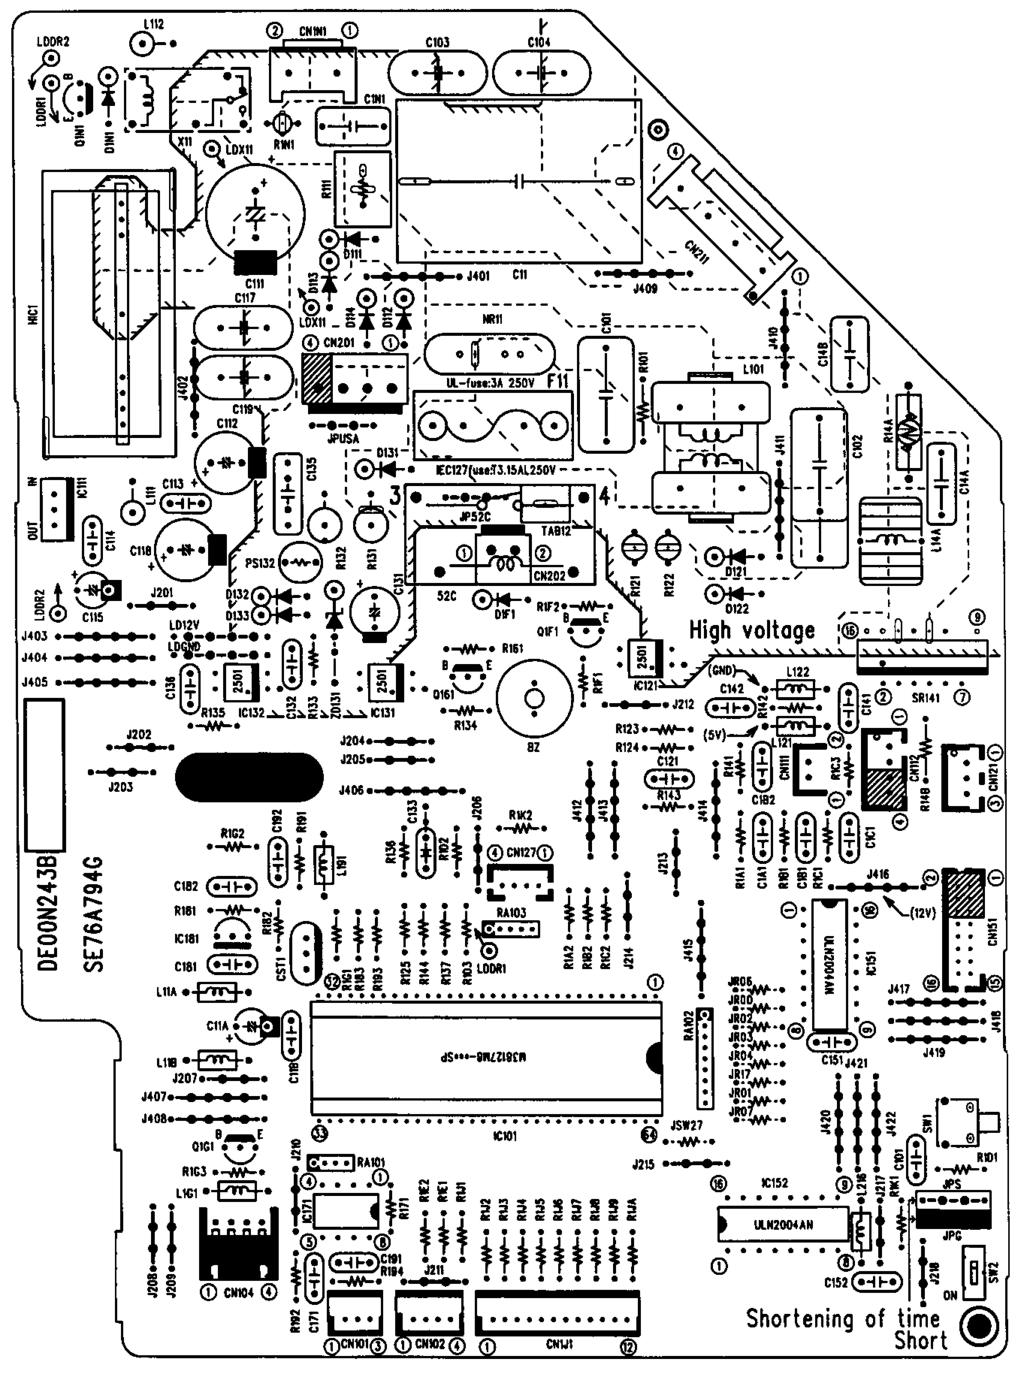 9-6. Test point diagram and voltage MS-GA50VB - E MS-GA60VB - E MS-GA80VB - Indoor electronic control P.C.